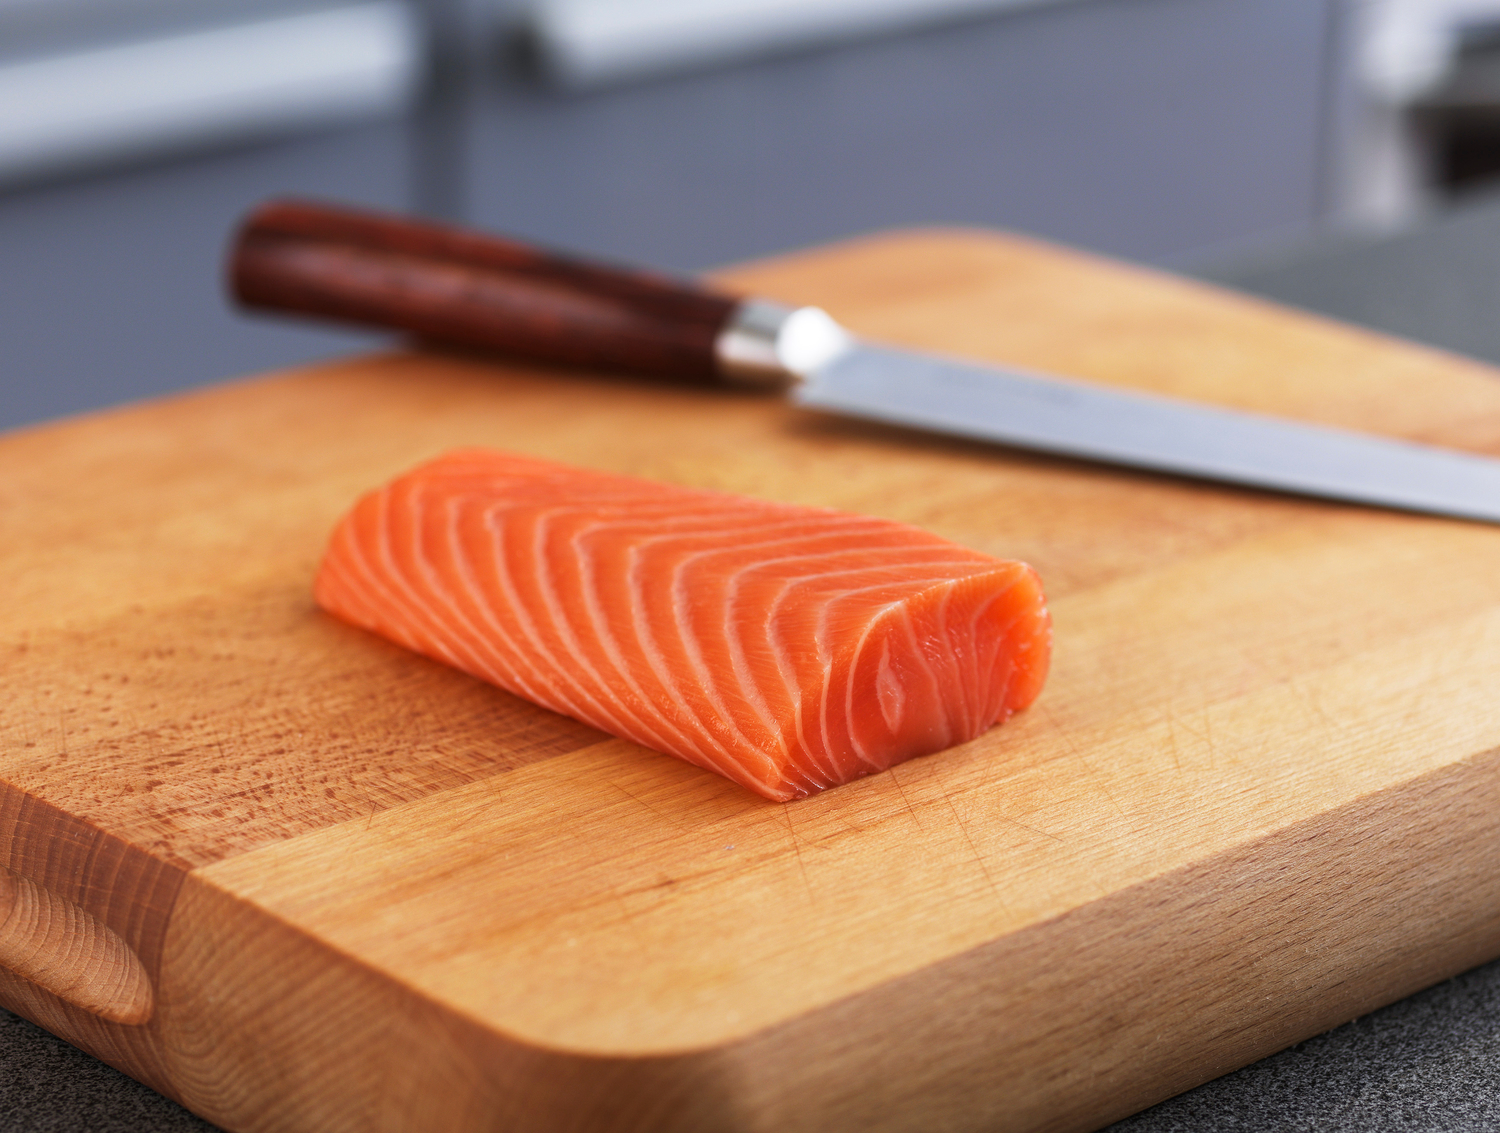 Il salmone norvegese: un ingrediente sano e sostenibile